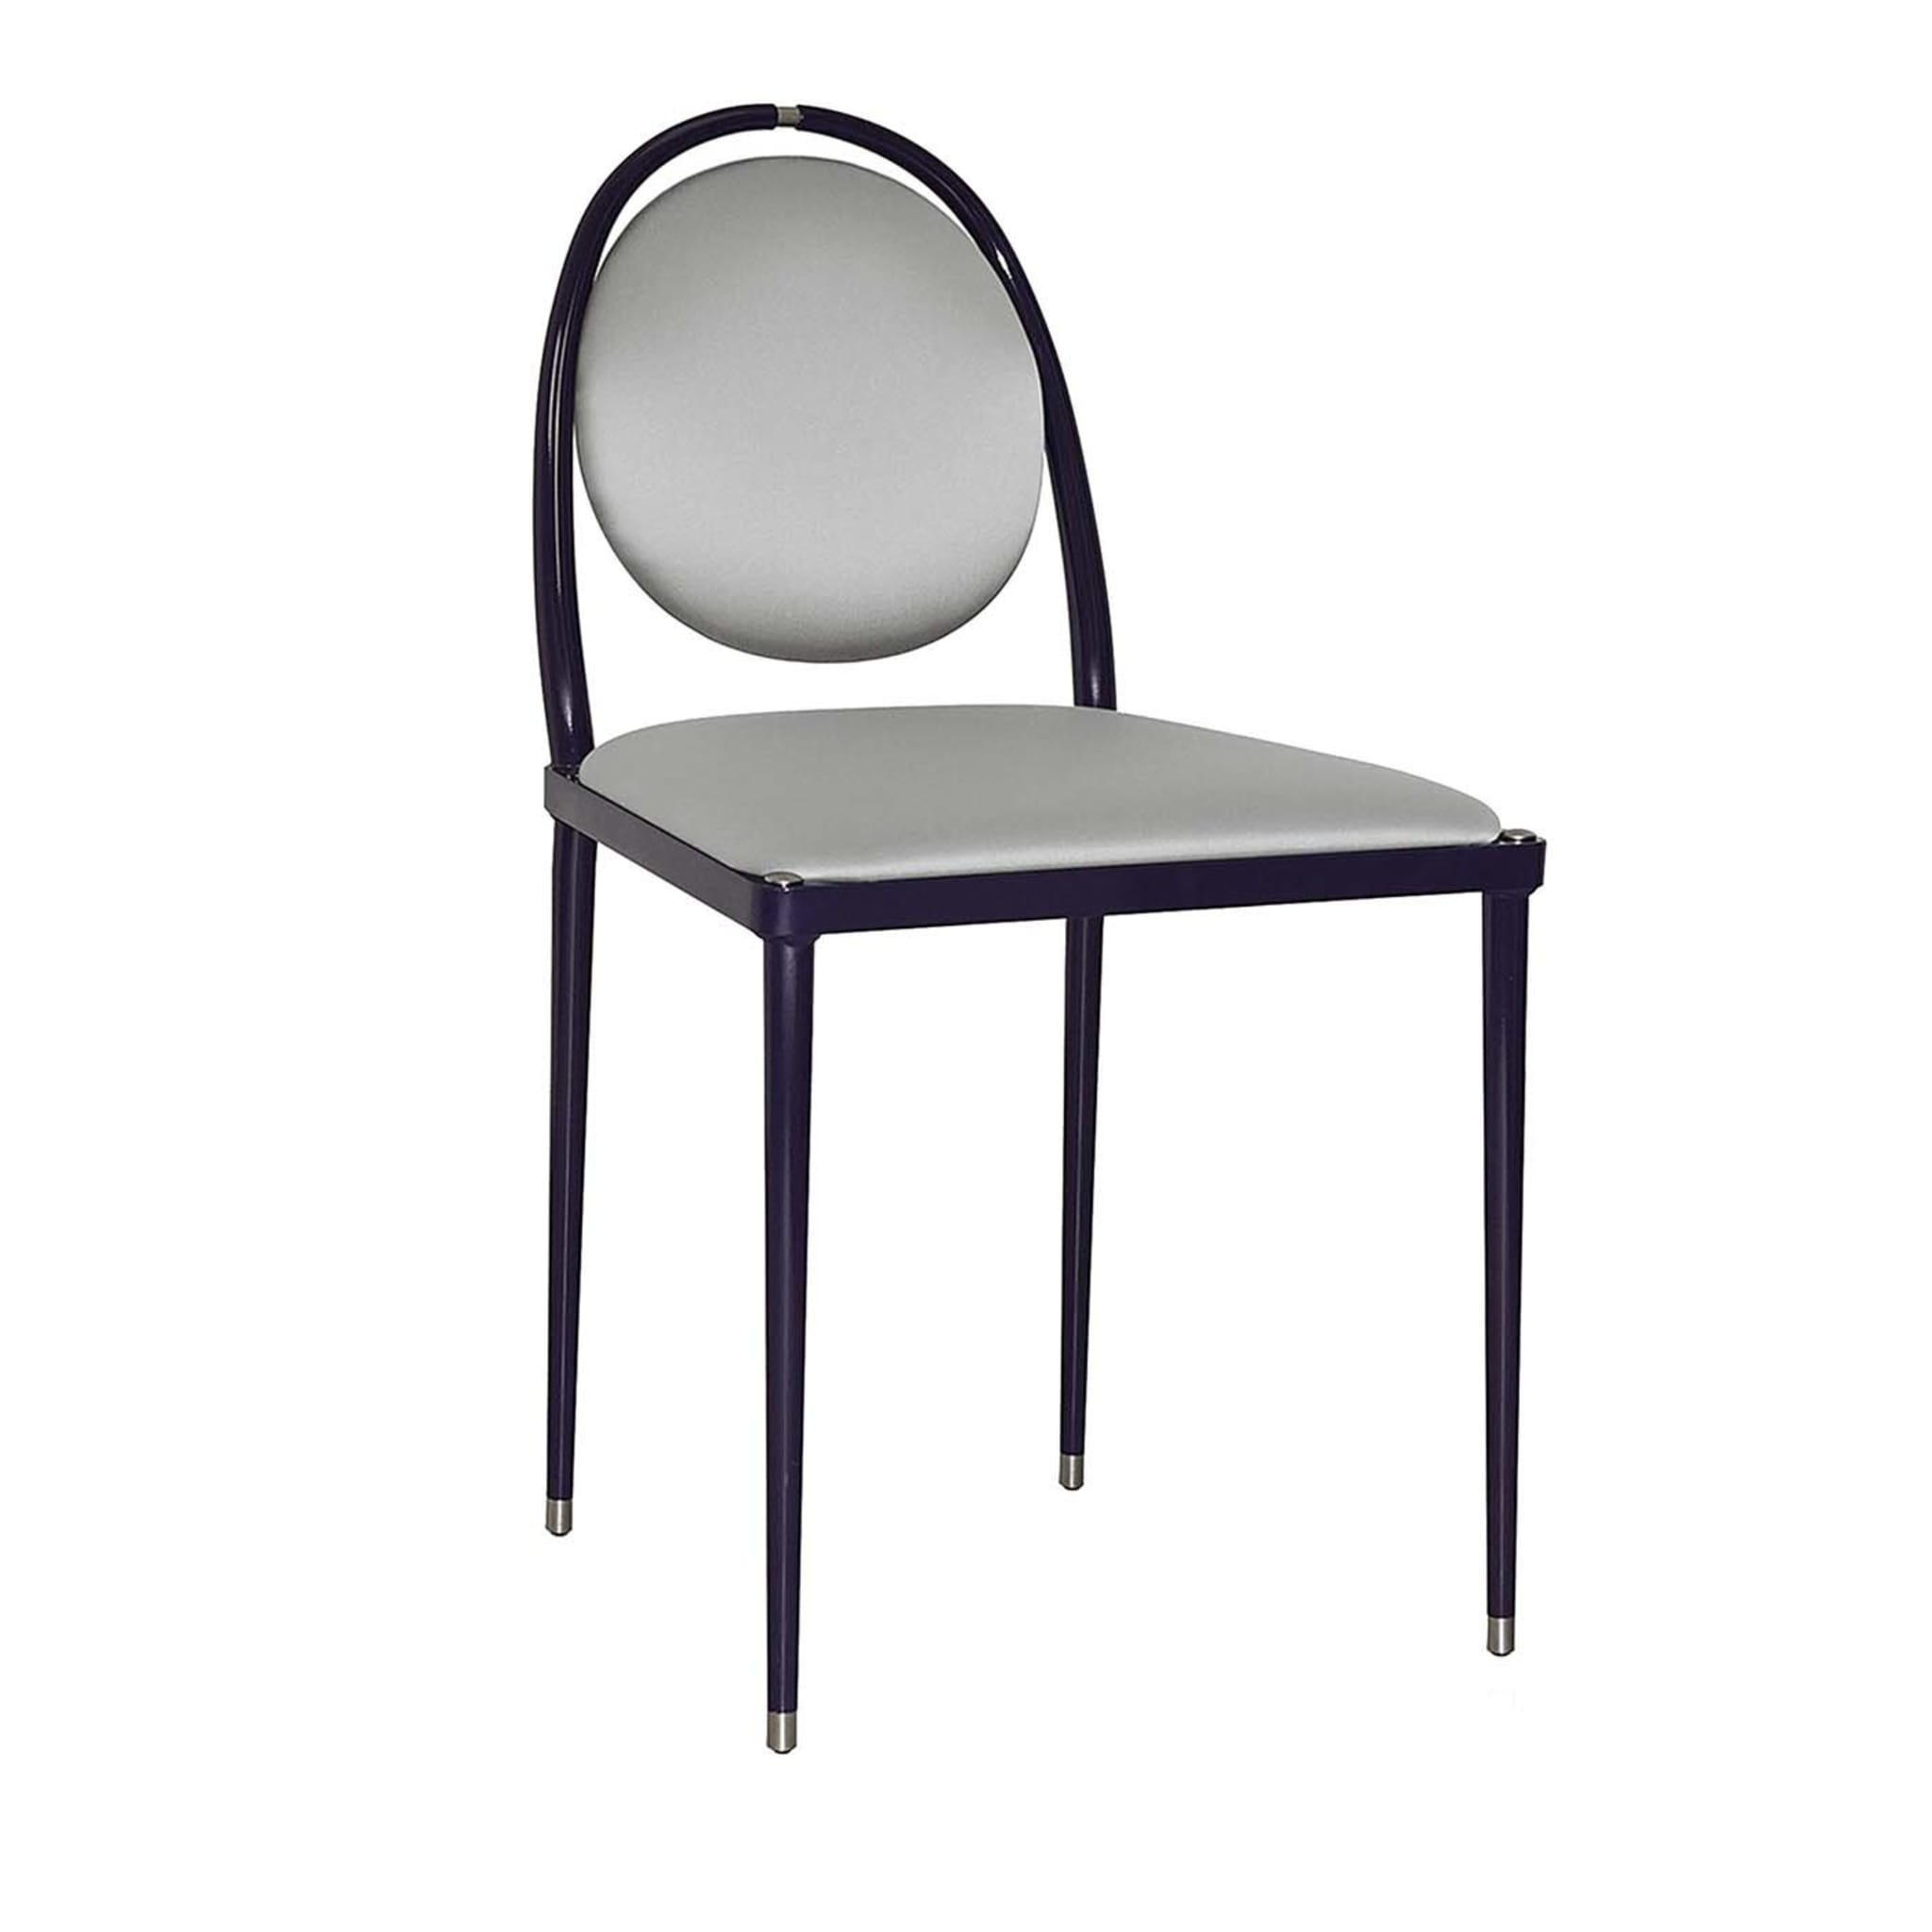 Balzaretti Silver Chair - Main view